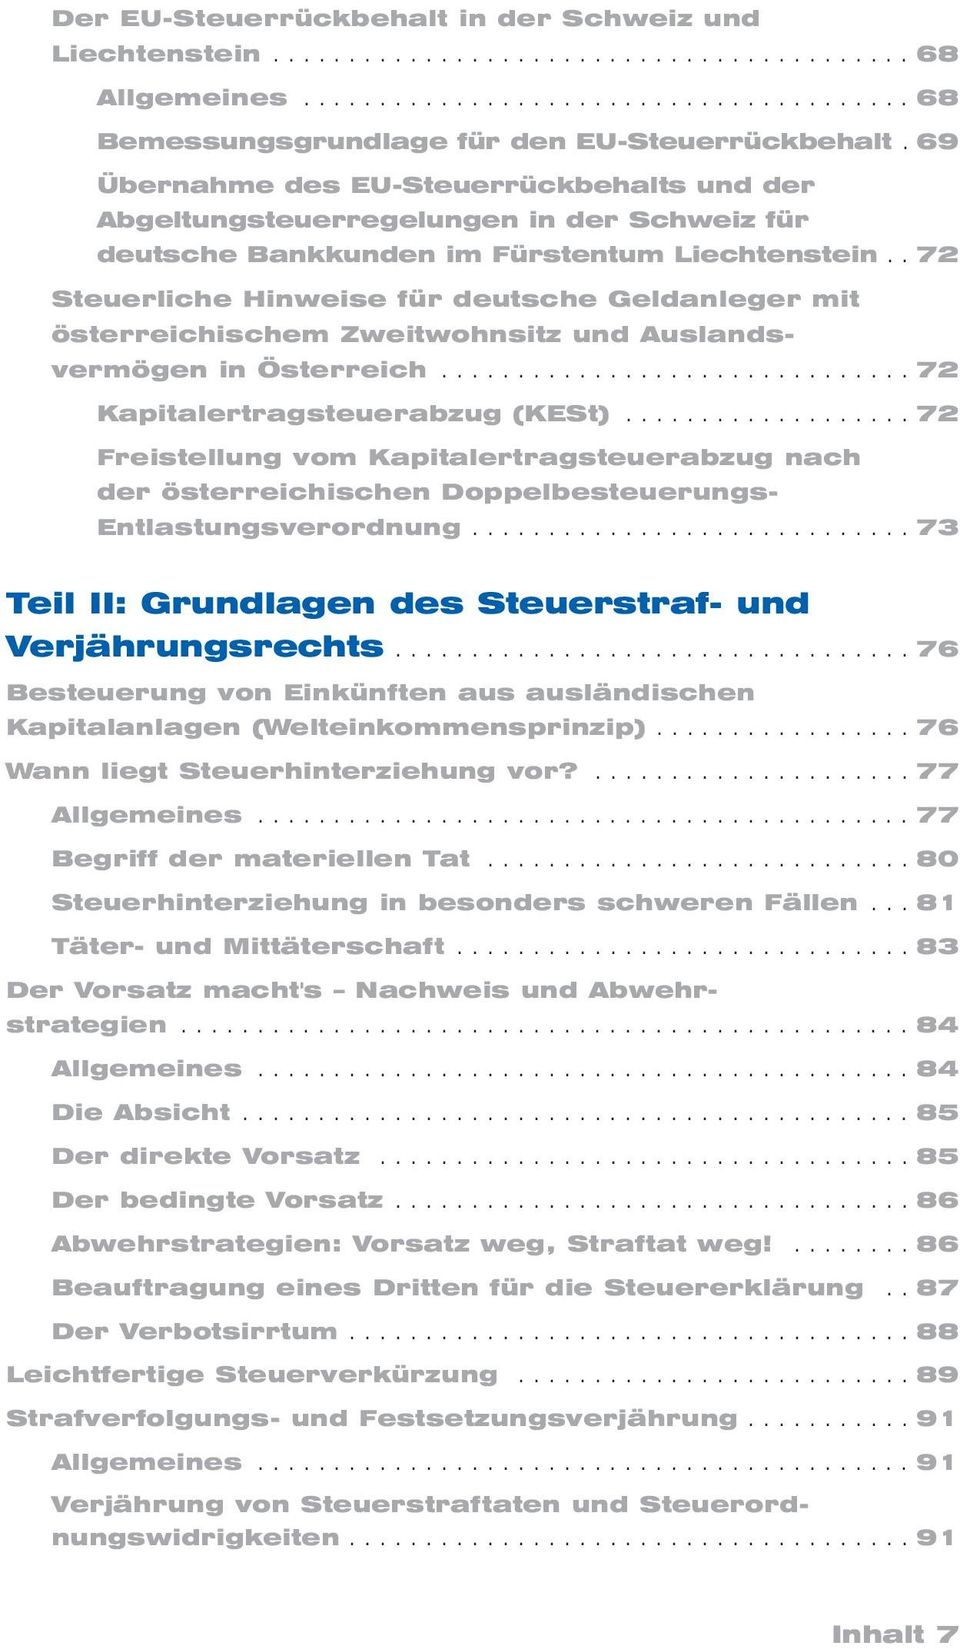 . 72 Steuerliche Hinweise für deutsche Geldanleger mit österreichischem Zweitwohnsitz und Auslands - vermögen in Österreich............................... 72 Kapitalertragsteuerabzug (KESt).